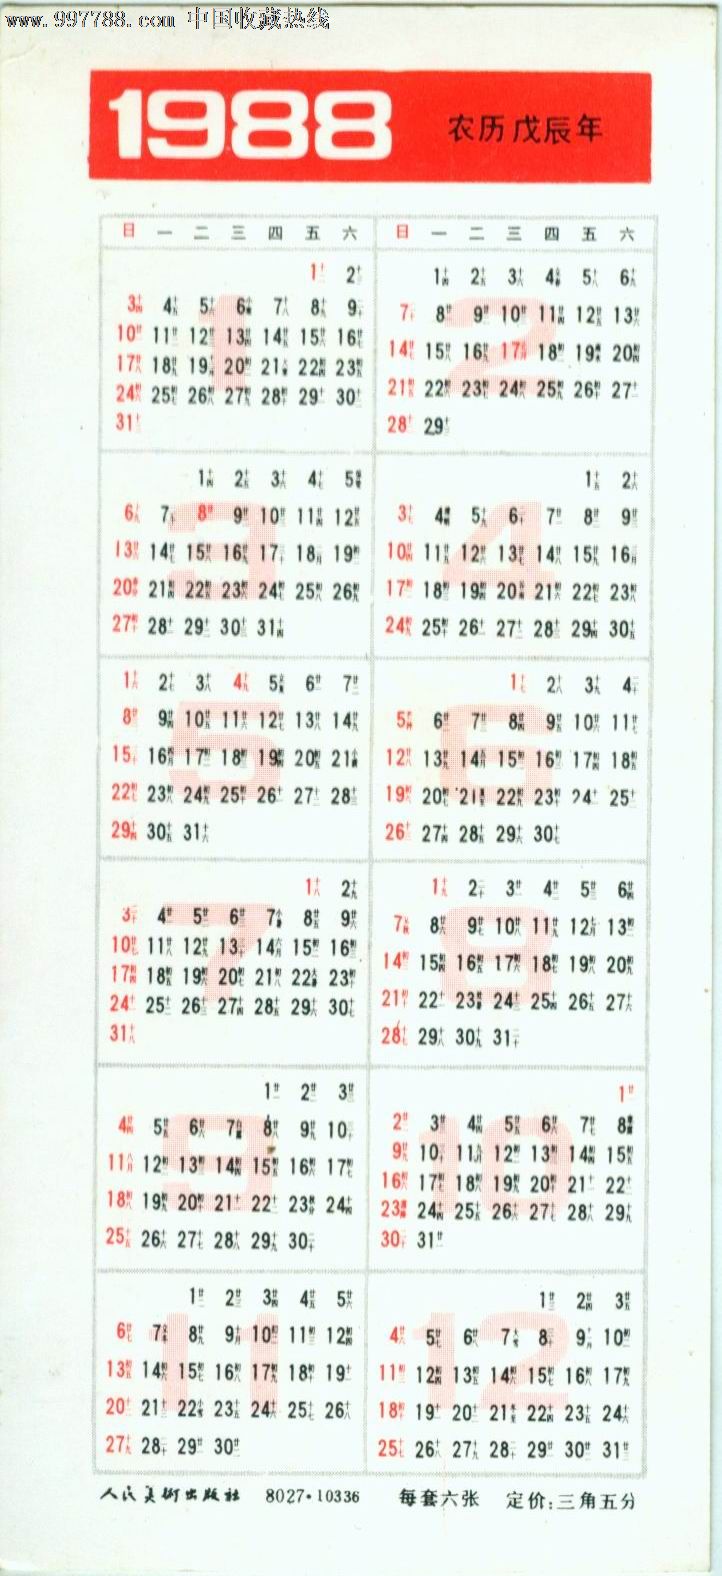 1988日历全年表图片